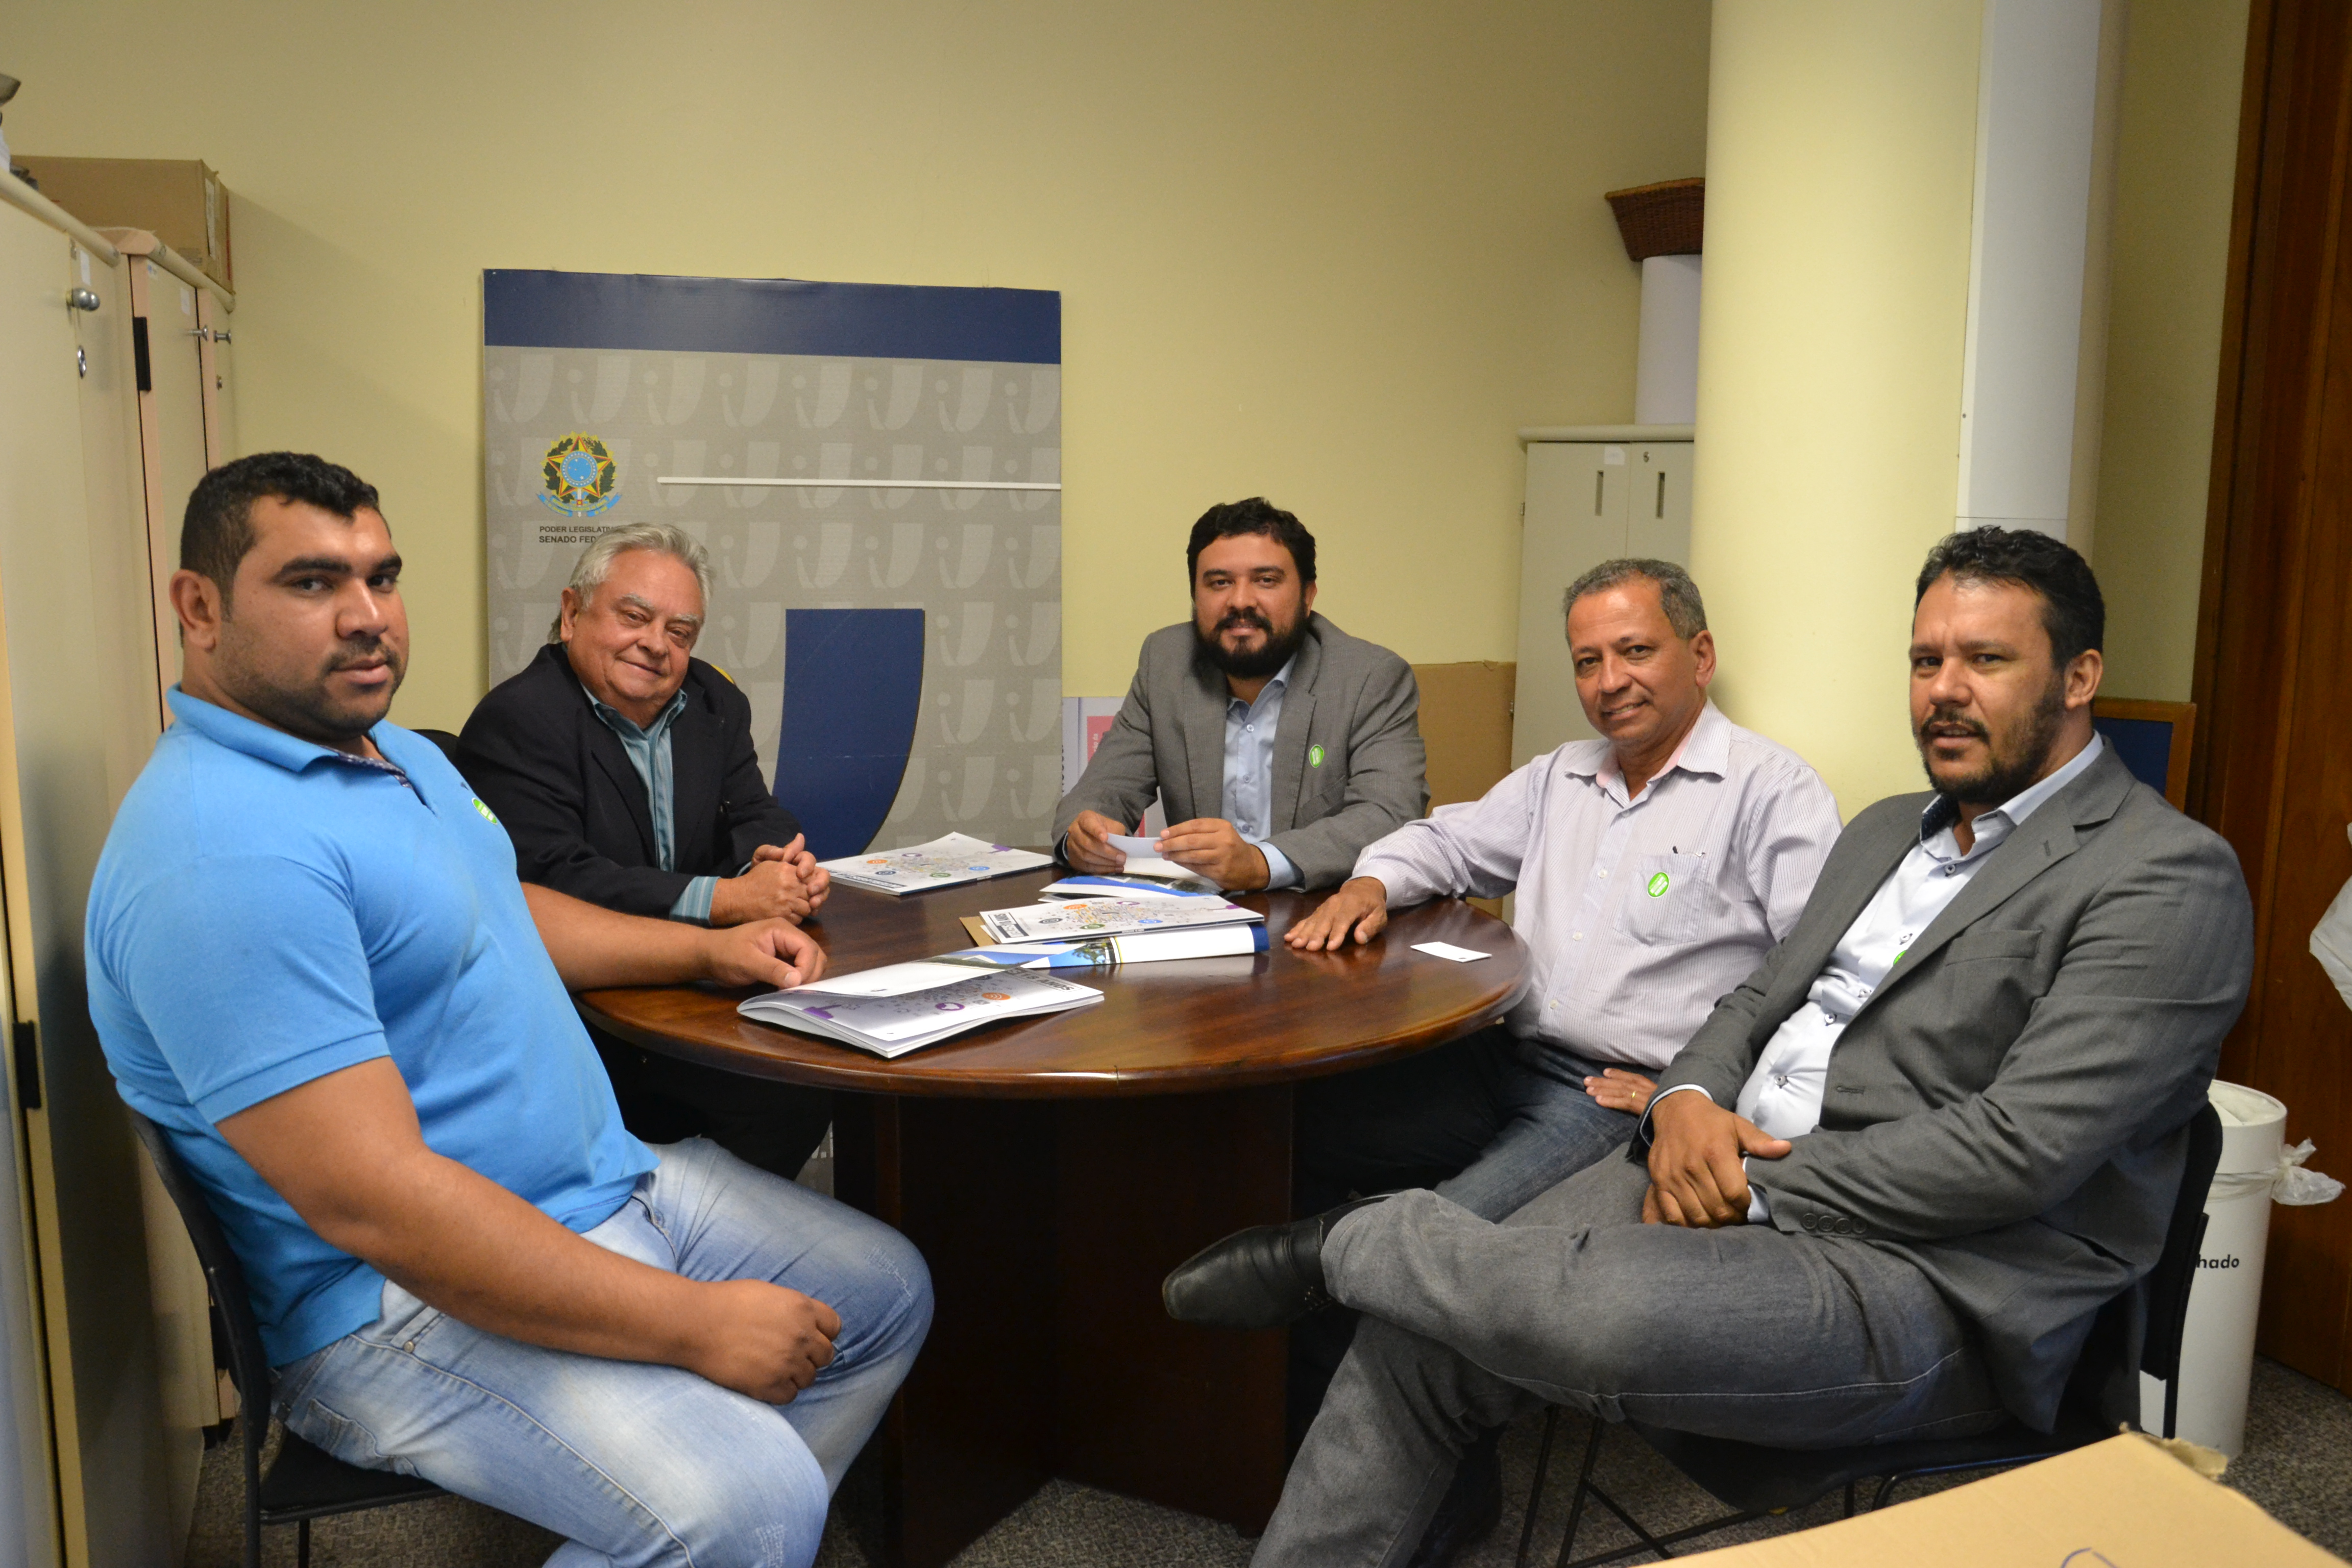 Prefeitos e vereador de municípios de Minas Gerais visitam o ILB/Interlegis